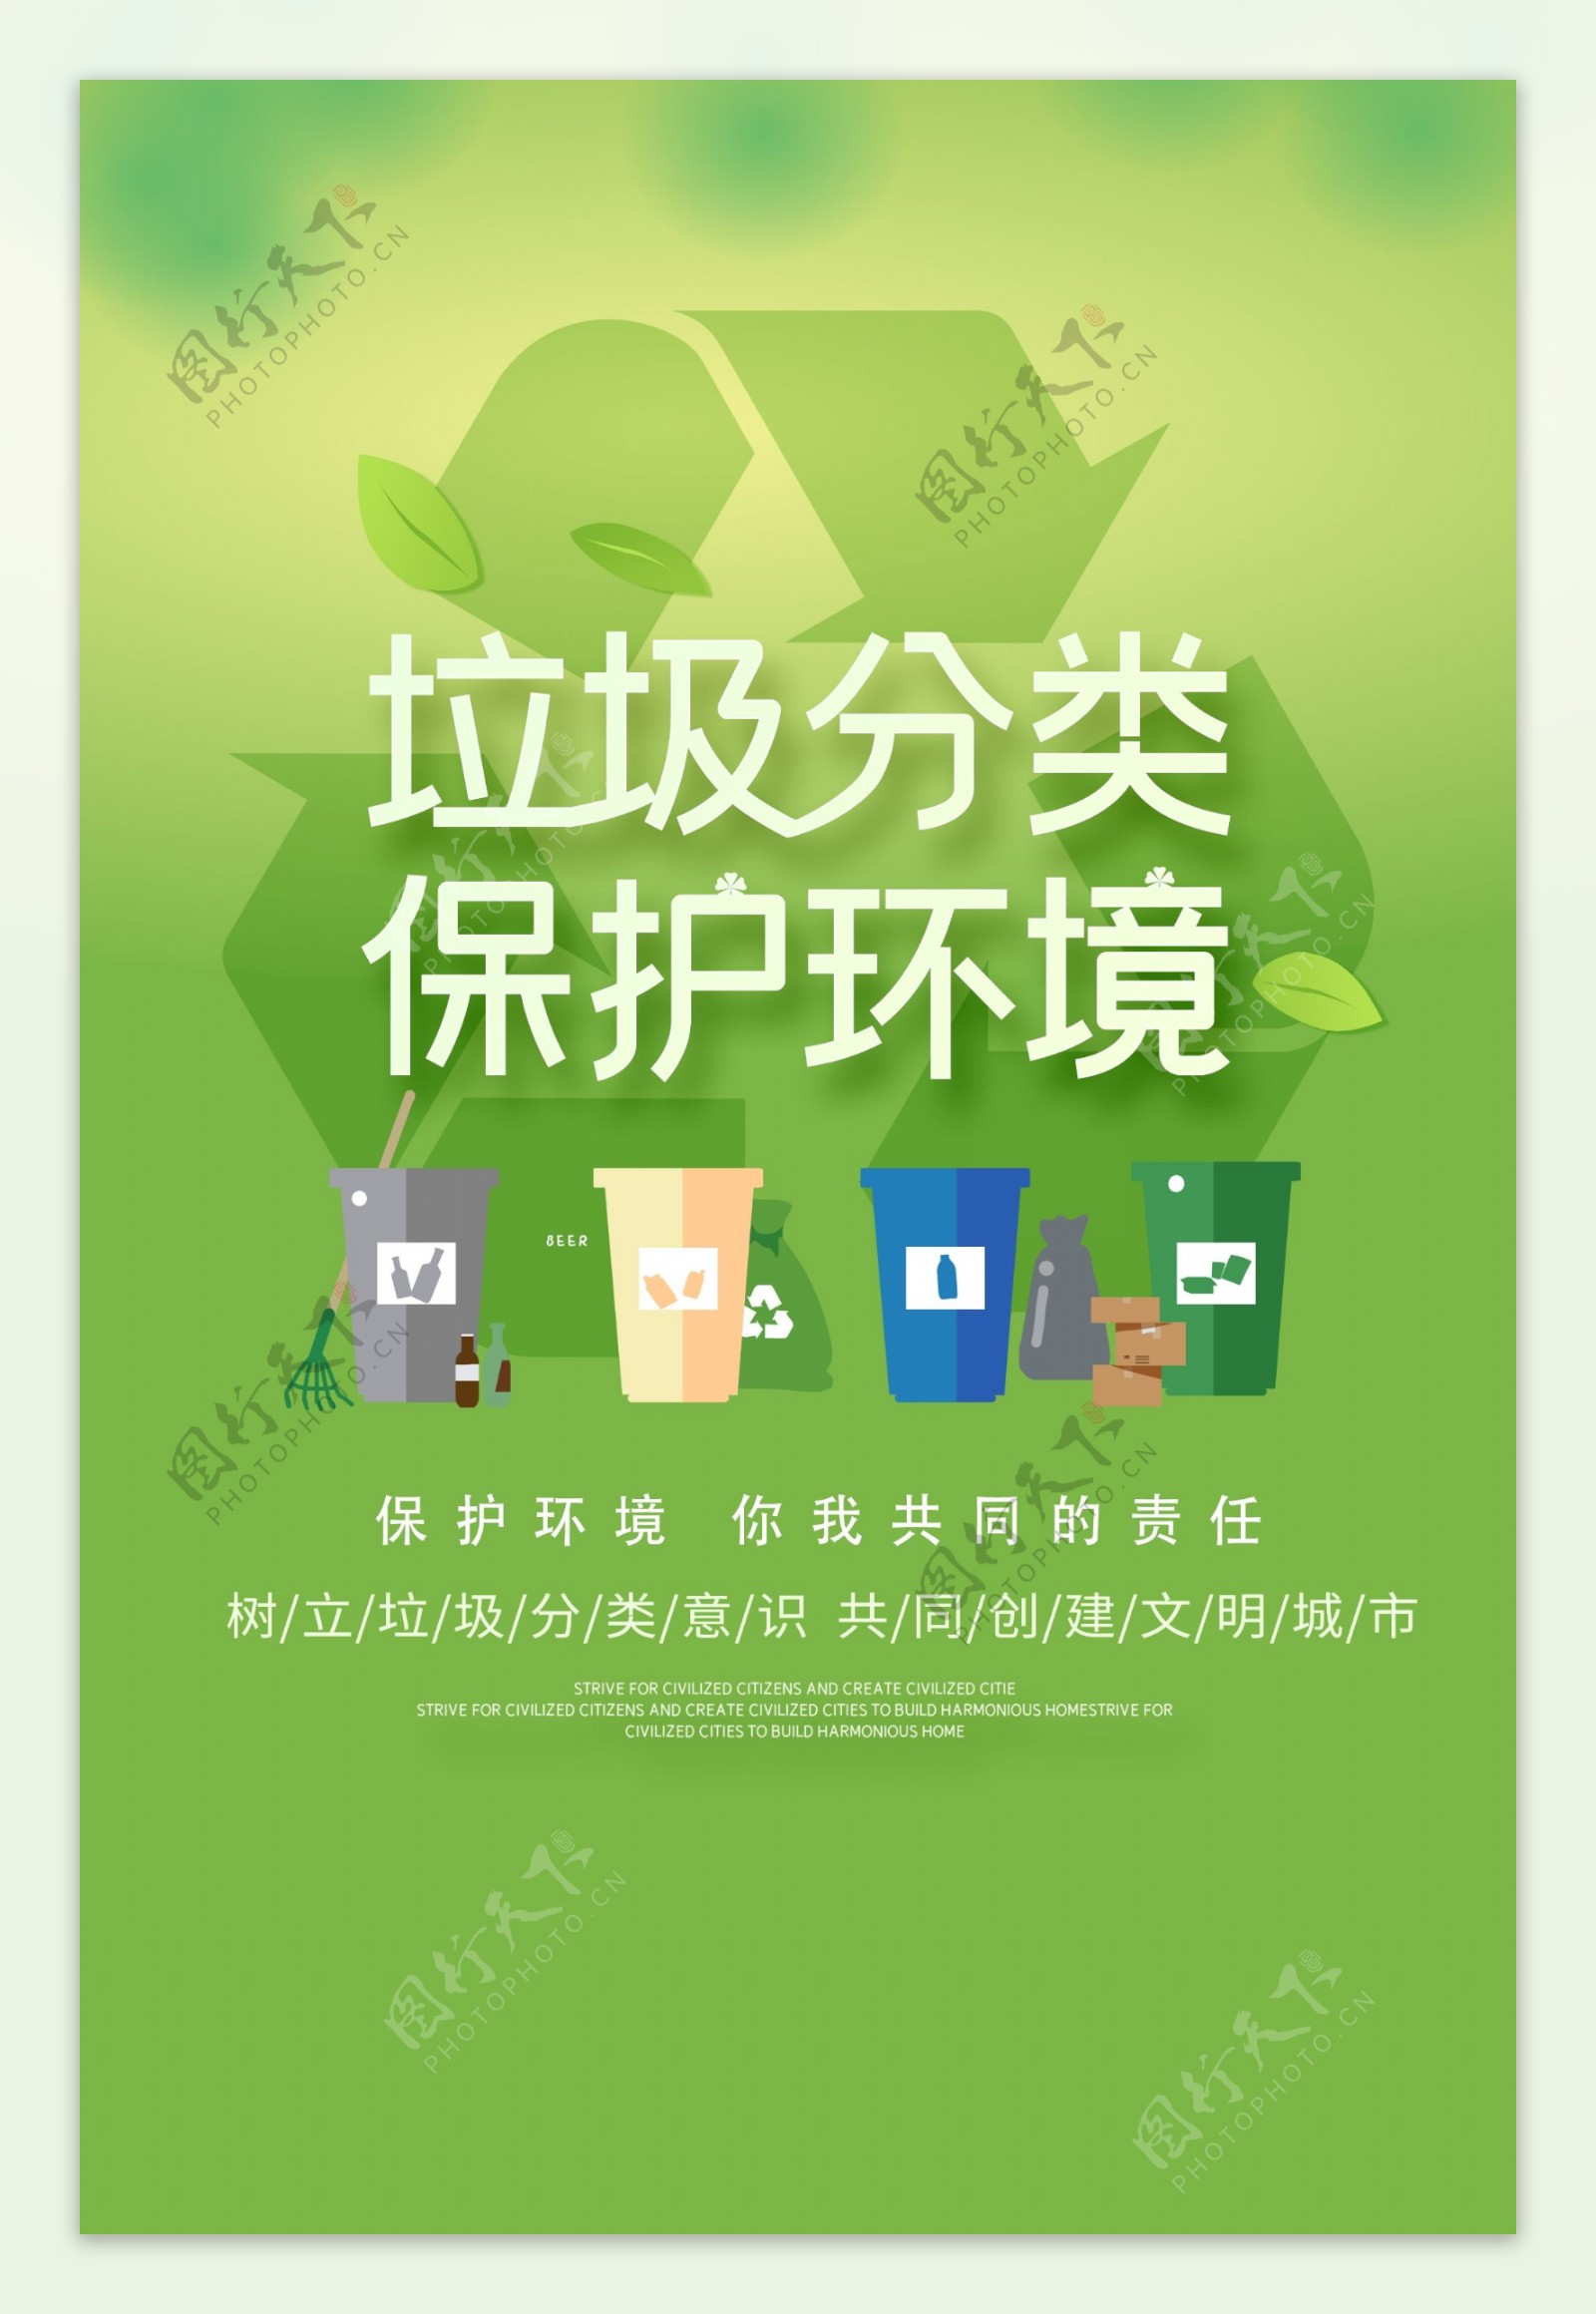 垃圾分类保护环境海报设计